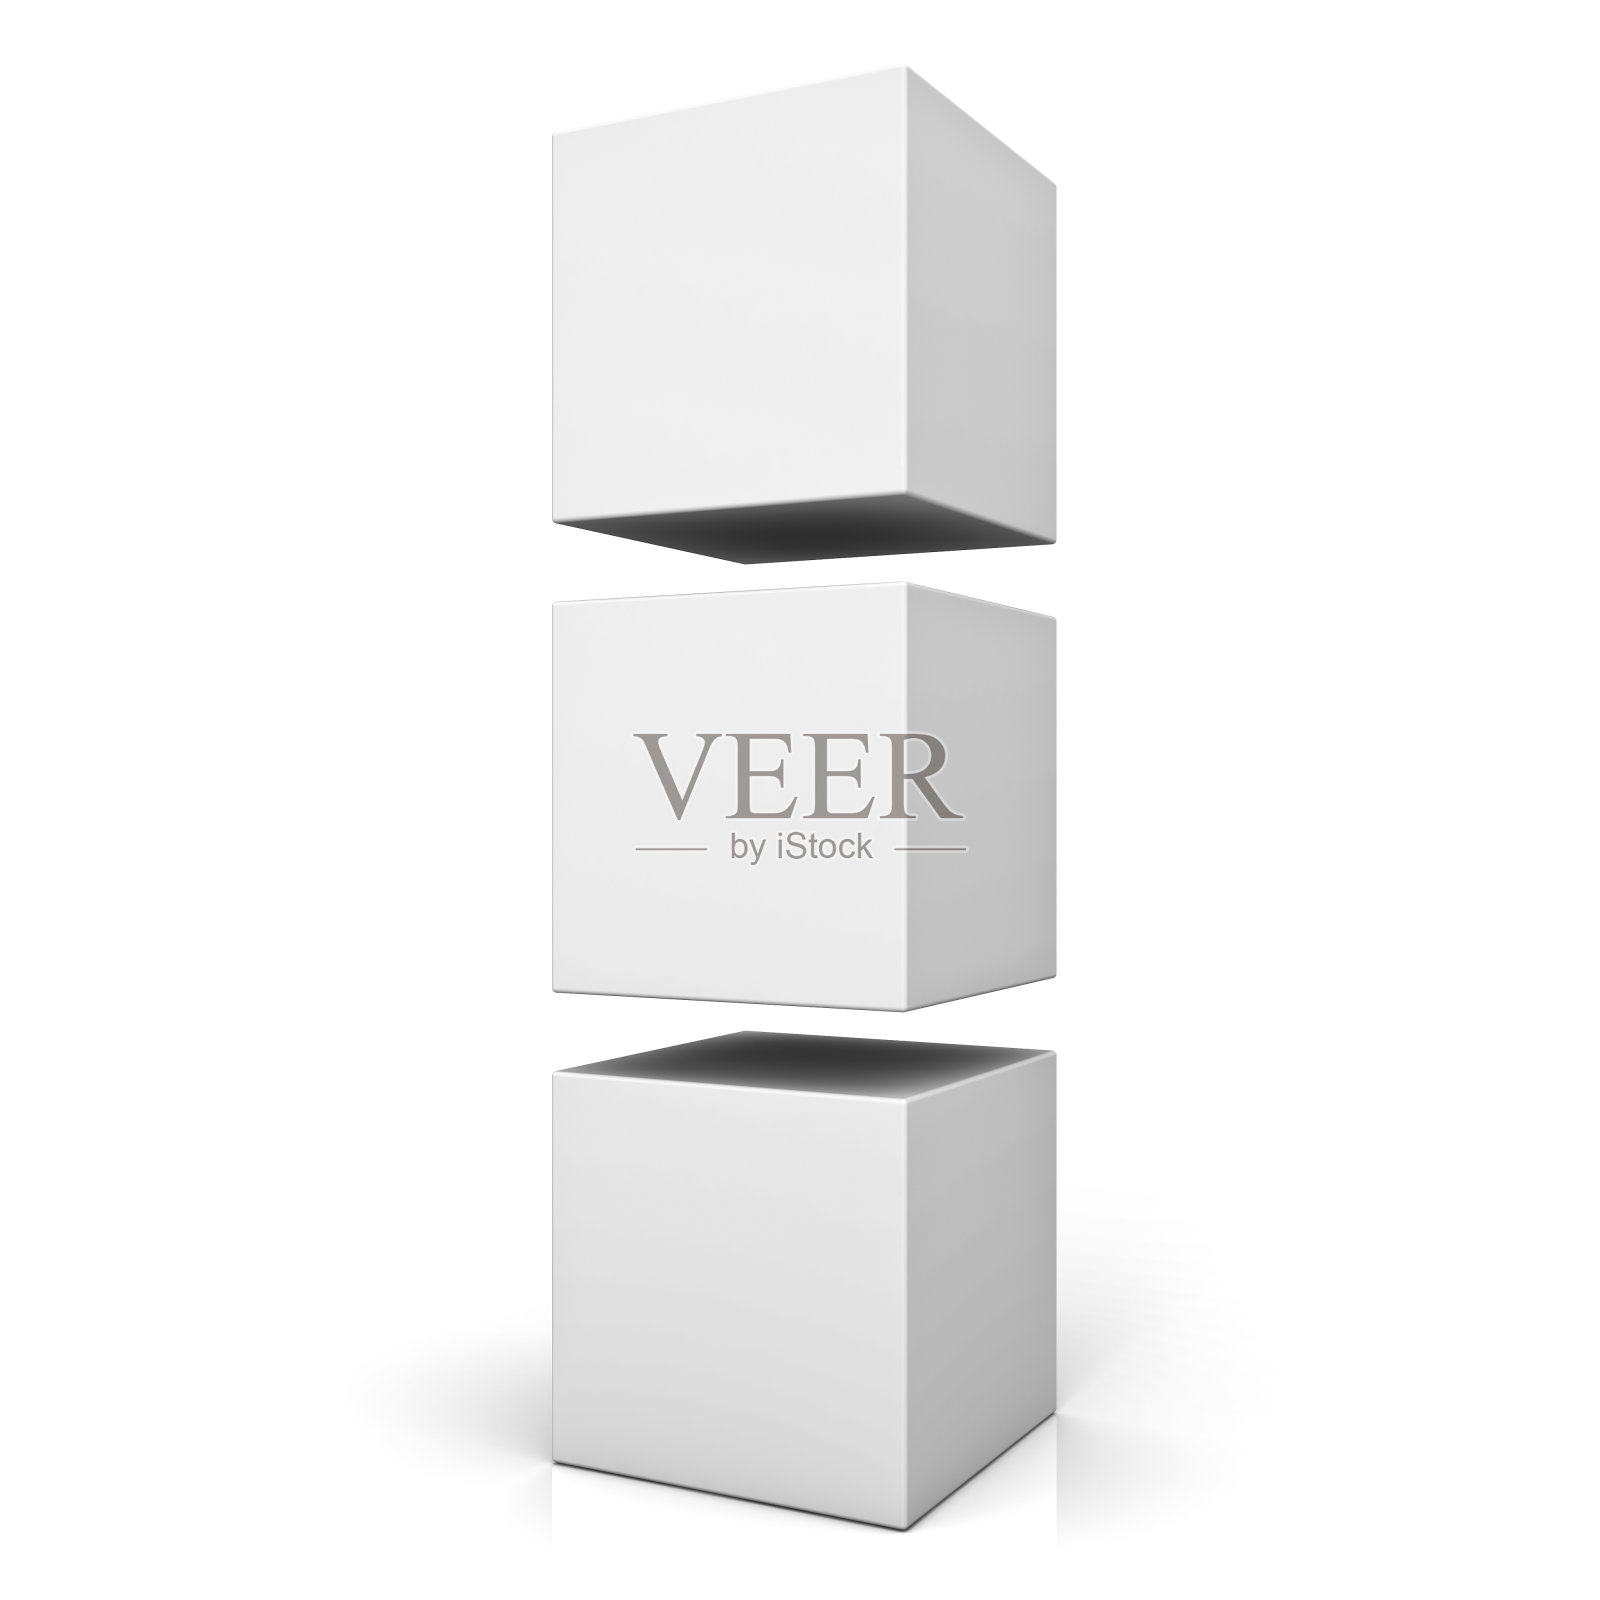 空白的3d盒子或立方体孤立地站在白色背景反射。三维渲染照片摄影图片